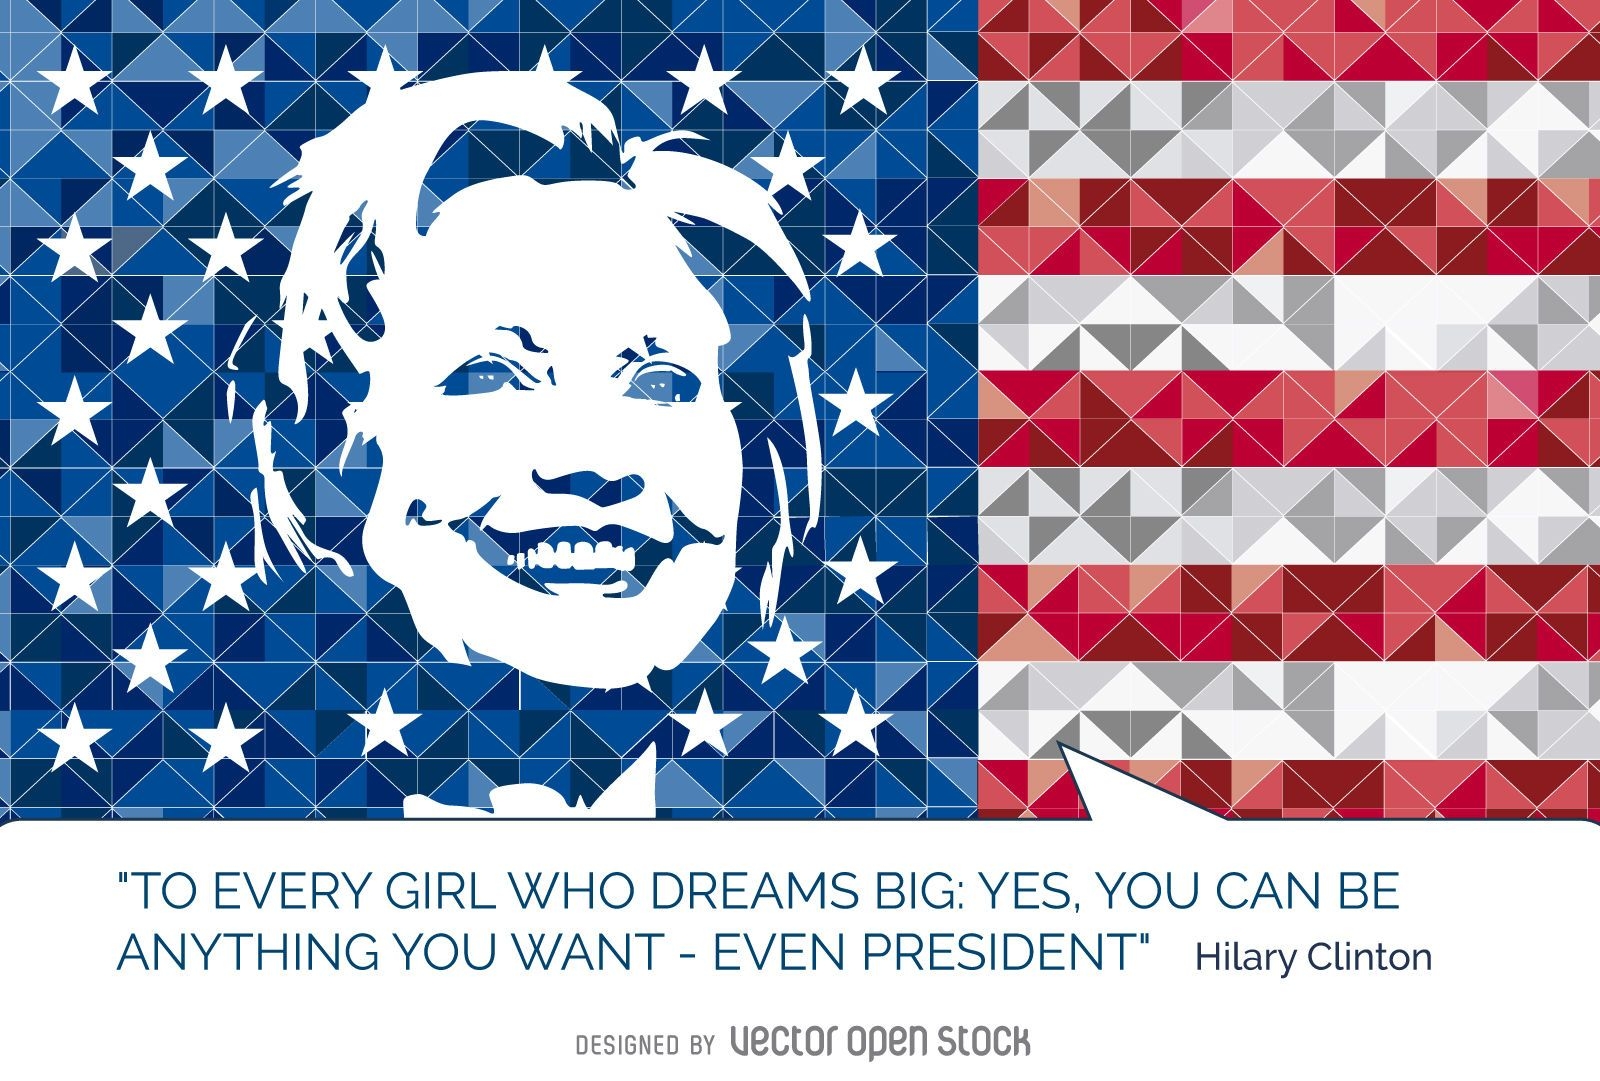 Hillary Clinton zitiert US-Flagge